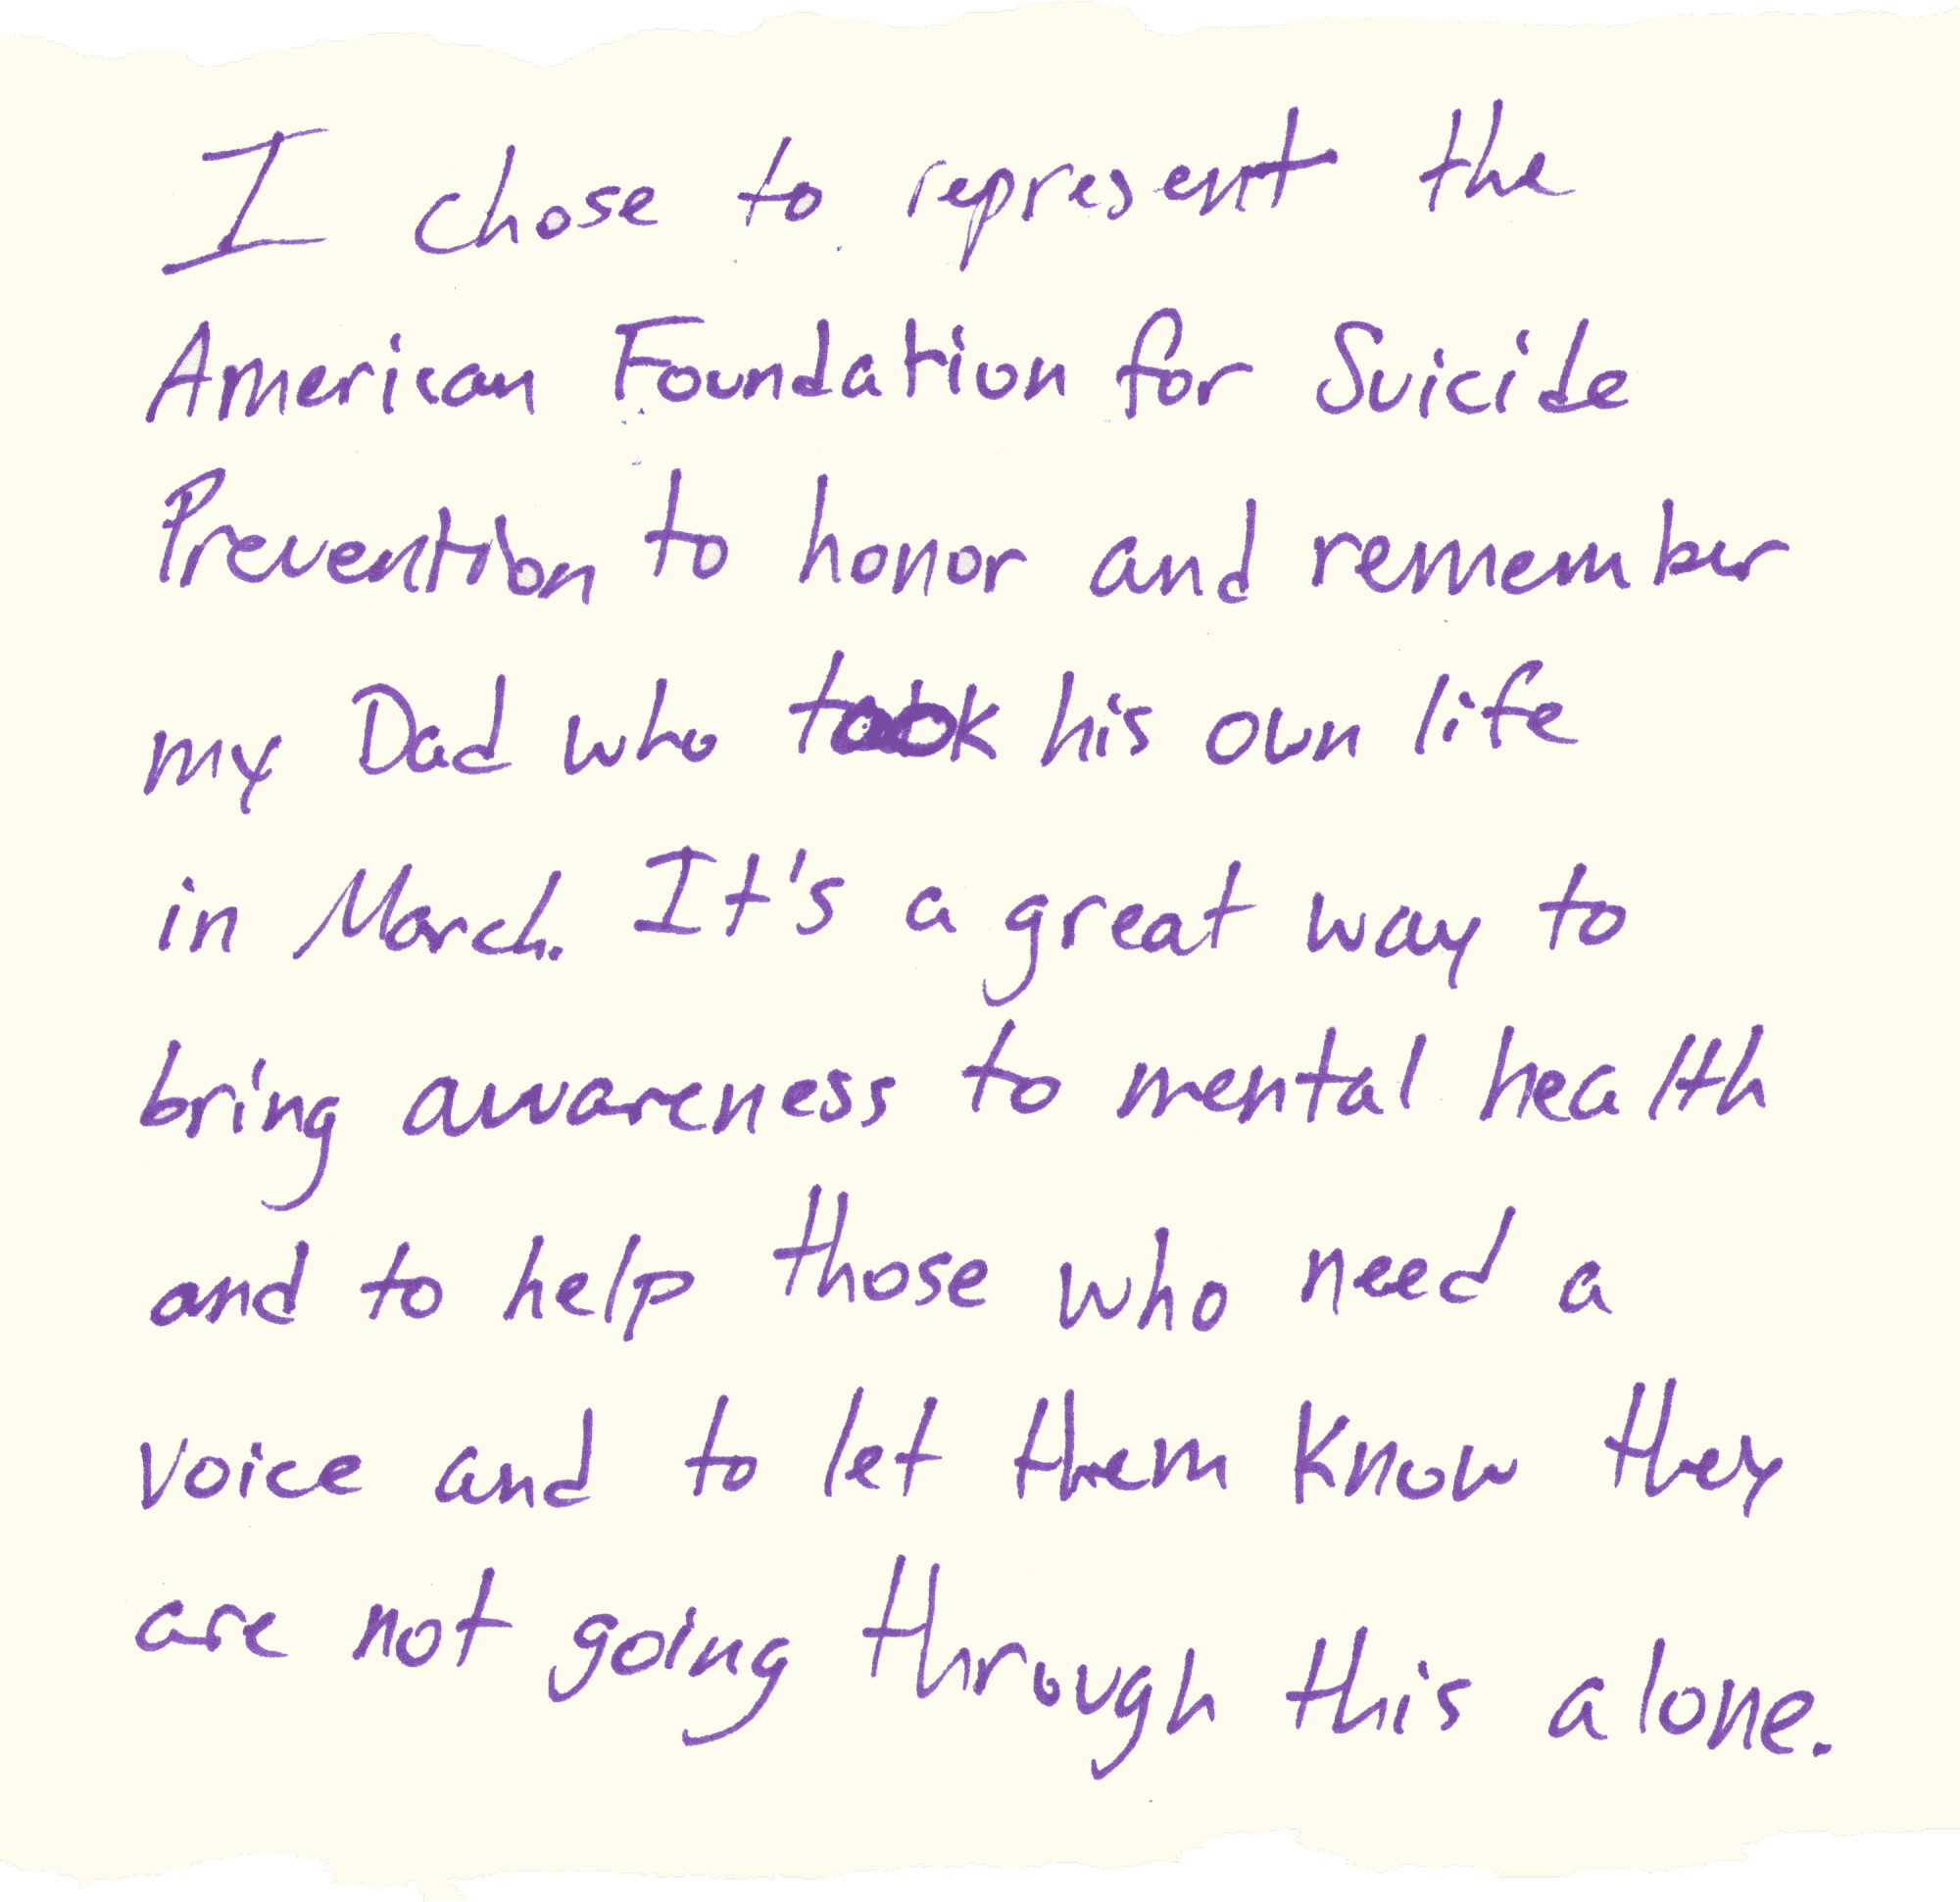 Ich habe mich entschieden, die American Foundation for Suicide Prevention zu vertreten, um meinen Vater zu ehren, der sich im März das Leben genommen hat